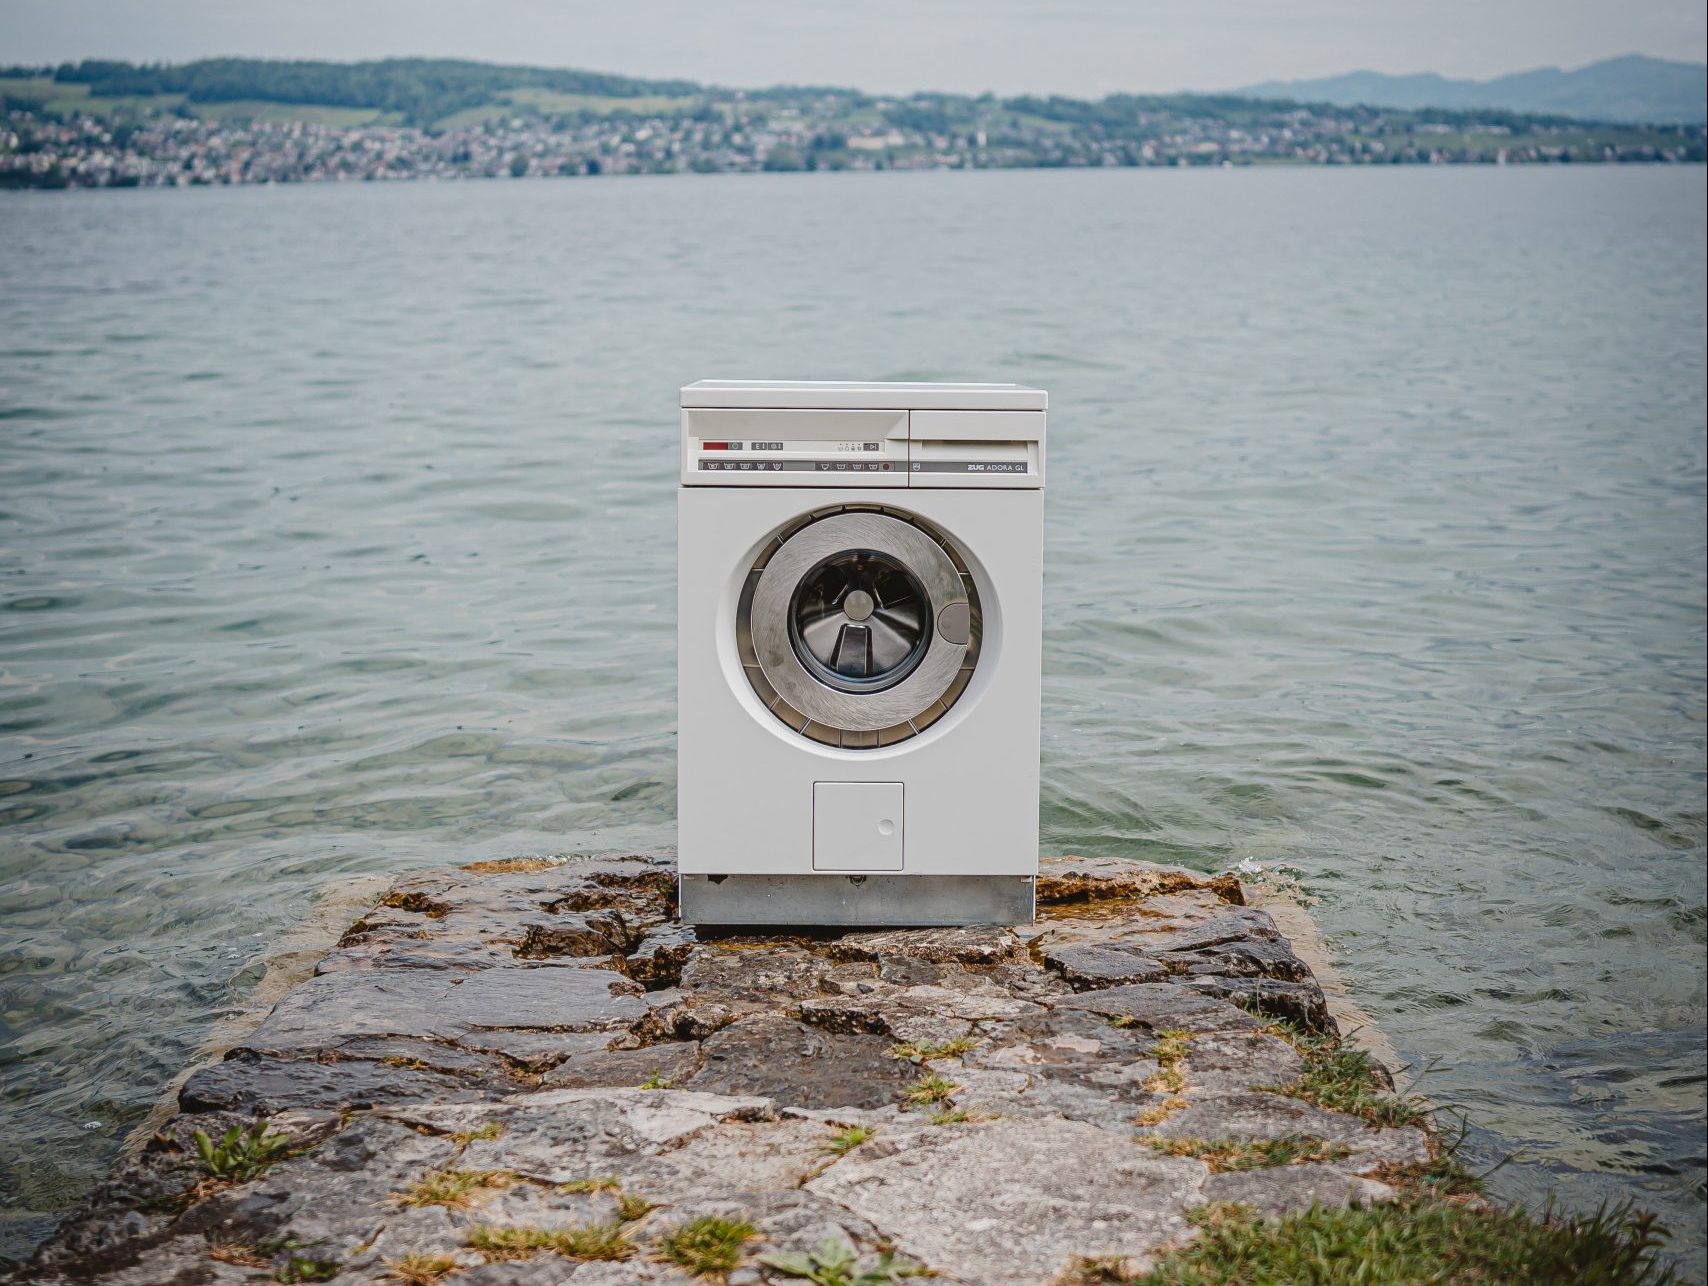 Is dure of wasmachine voor de energierekening?